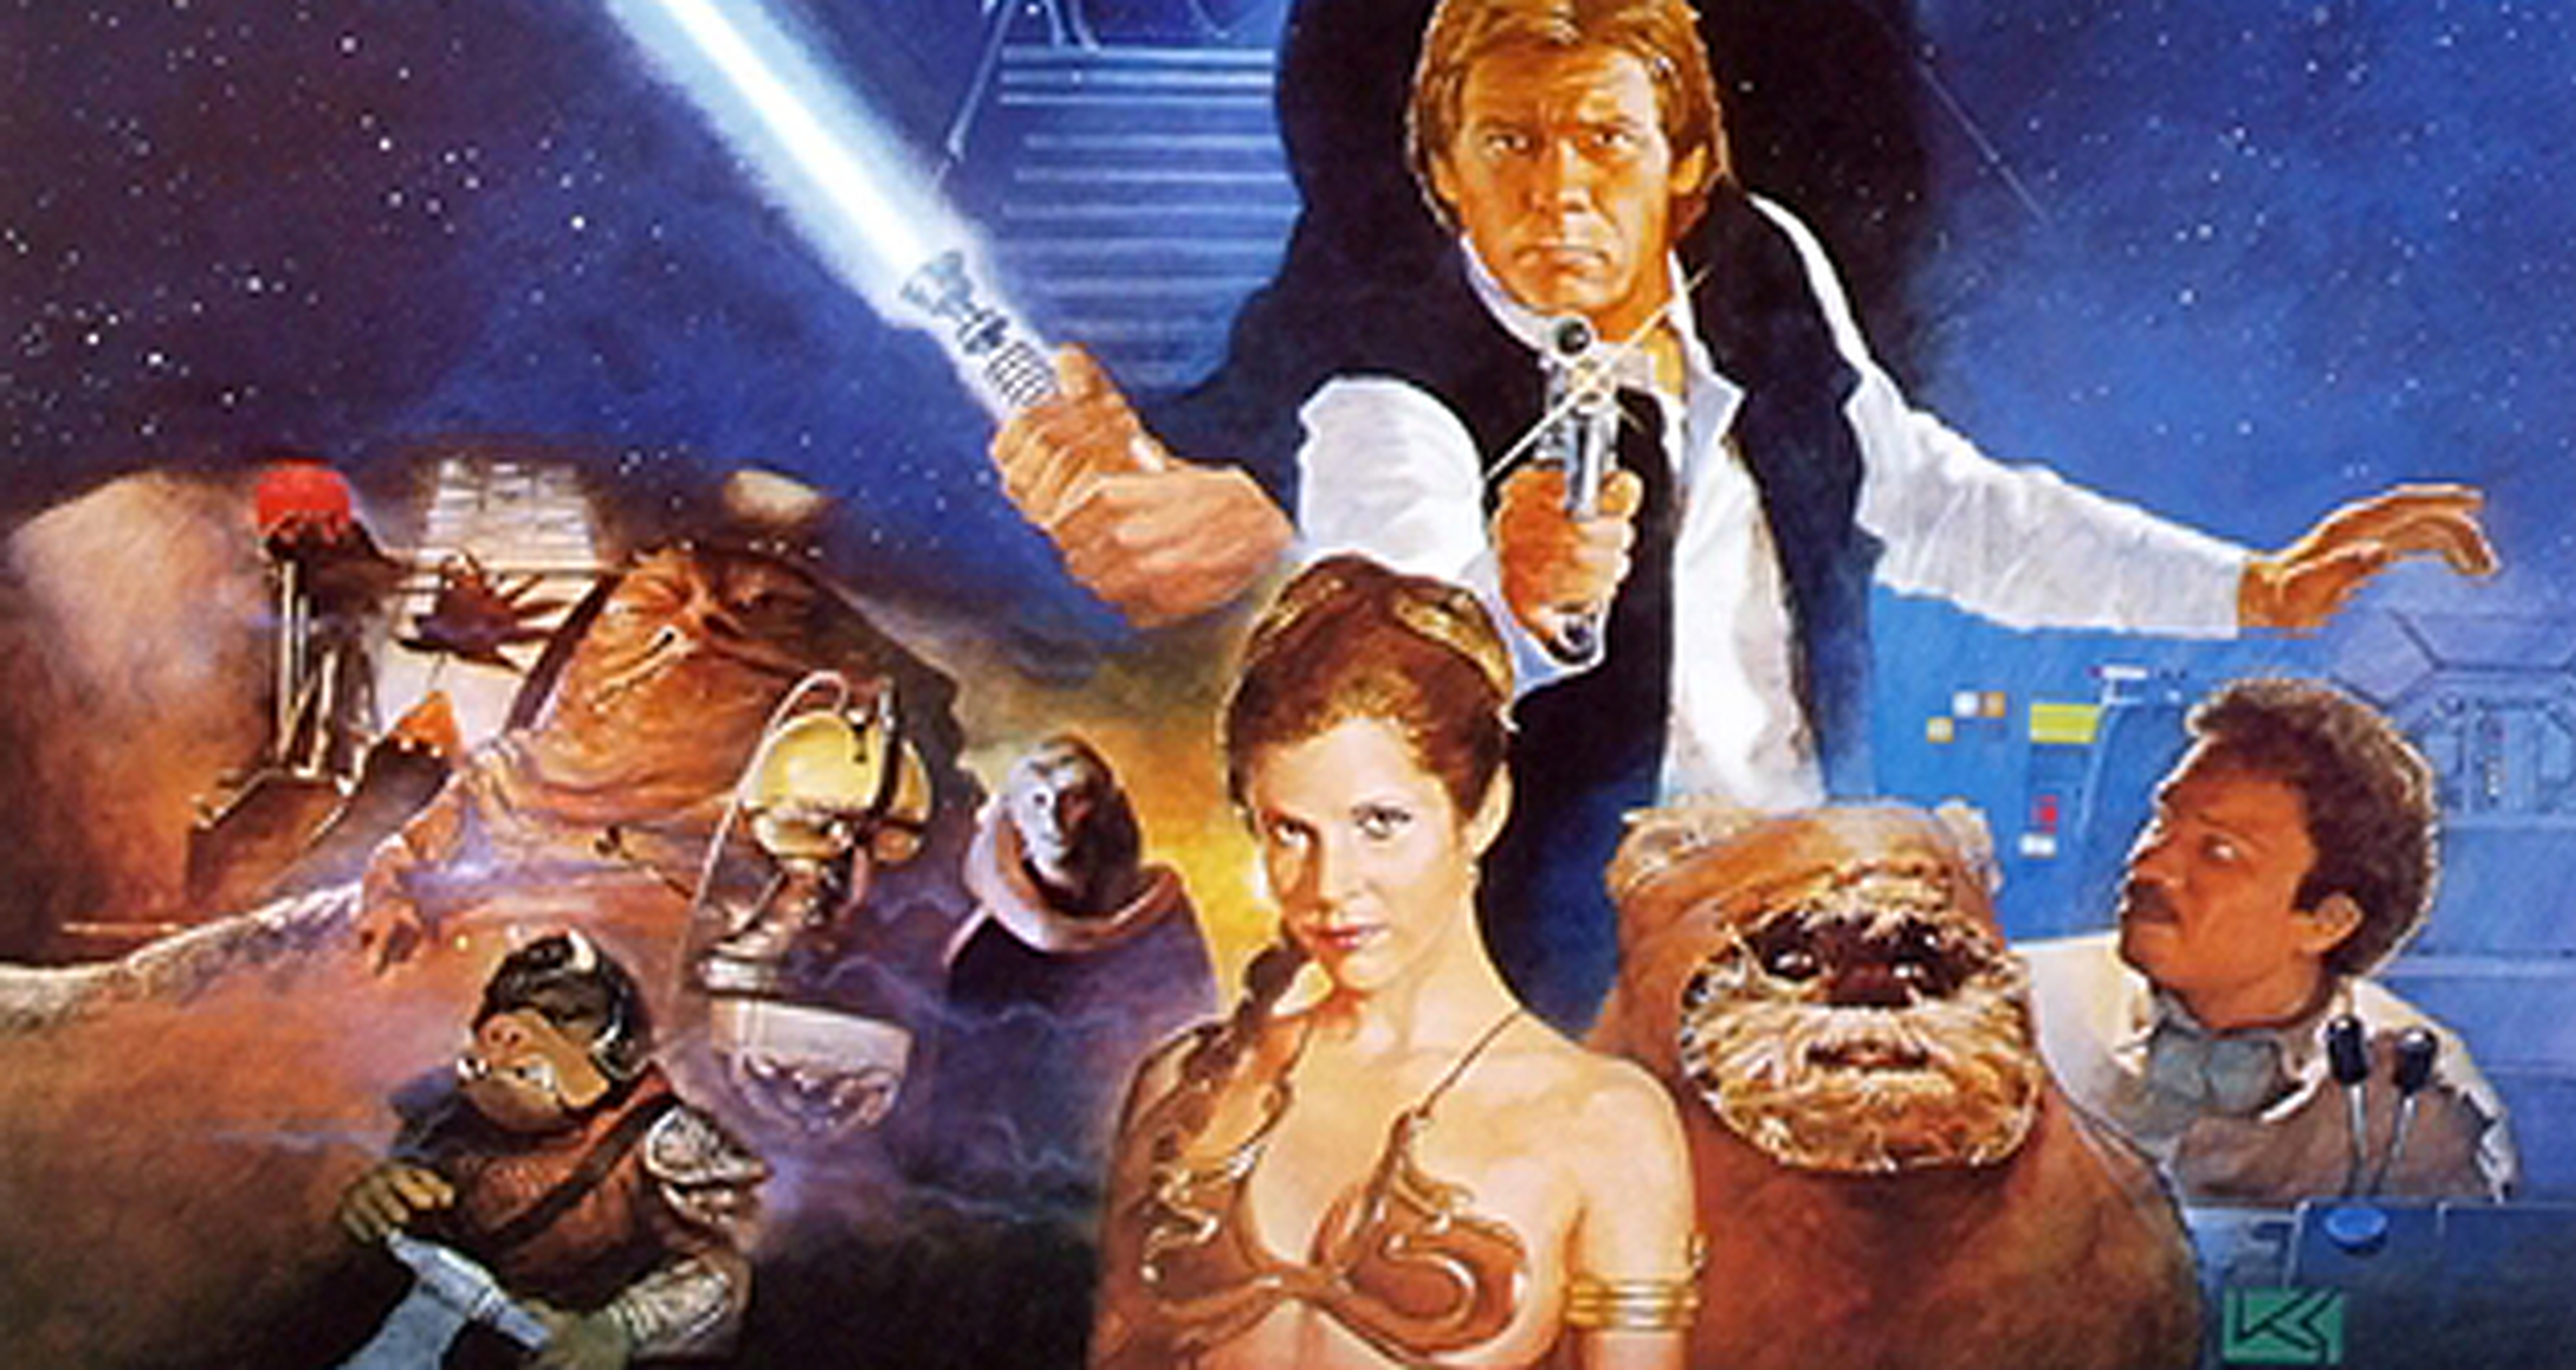 Cine de ciencia ficción: Crítica de Star Wars (El retorno del jedi)